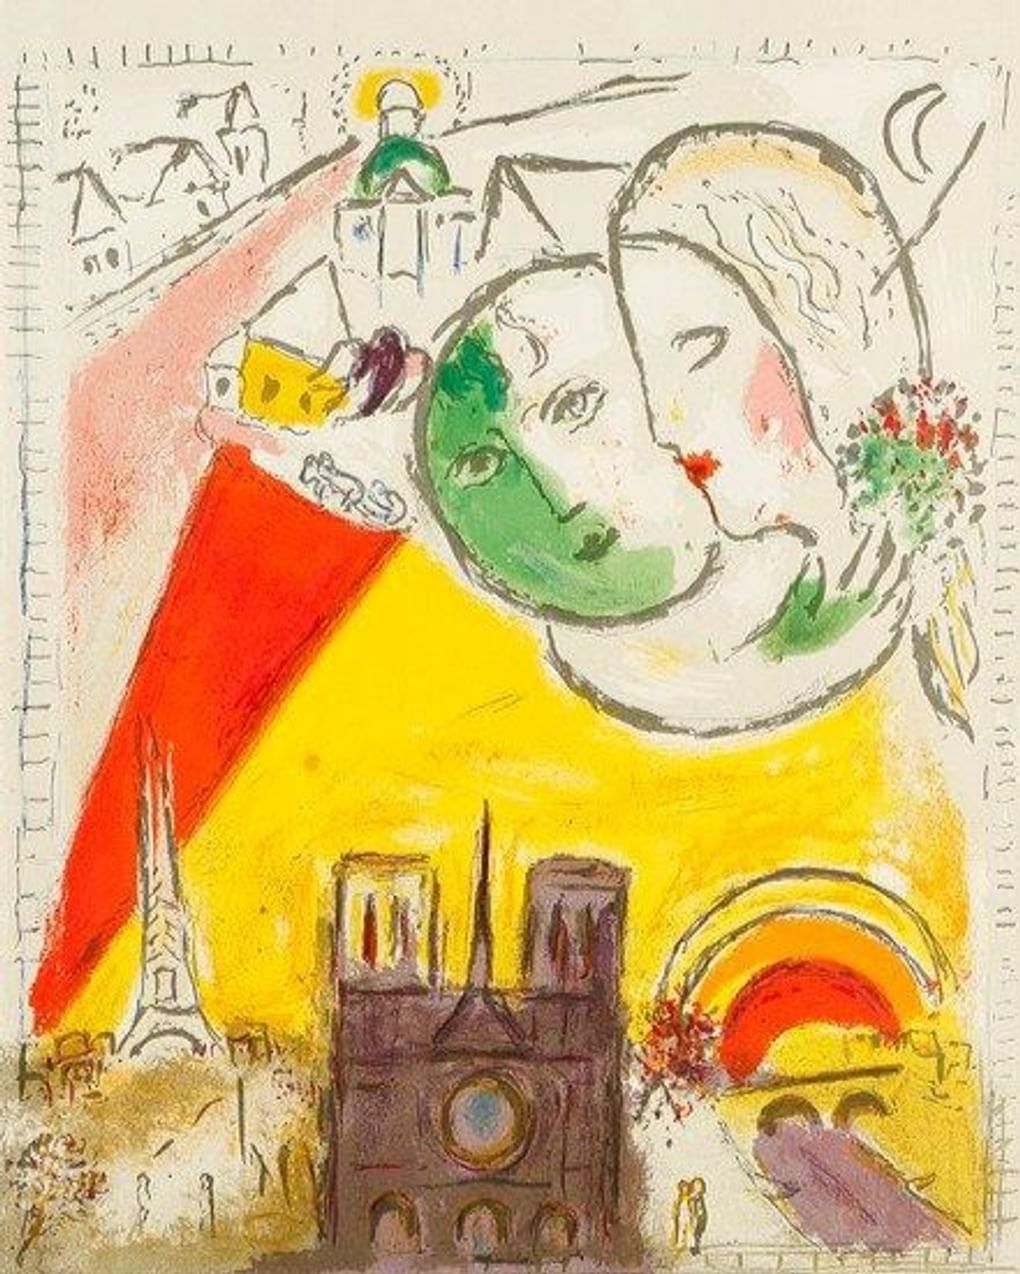 Марк Шагал. По воскресеньям. 1954. Цветная литография. Коллекция Altmans Gallery, Москва